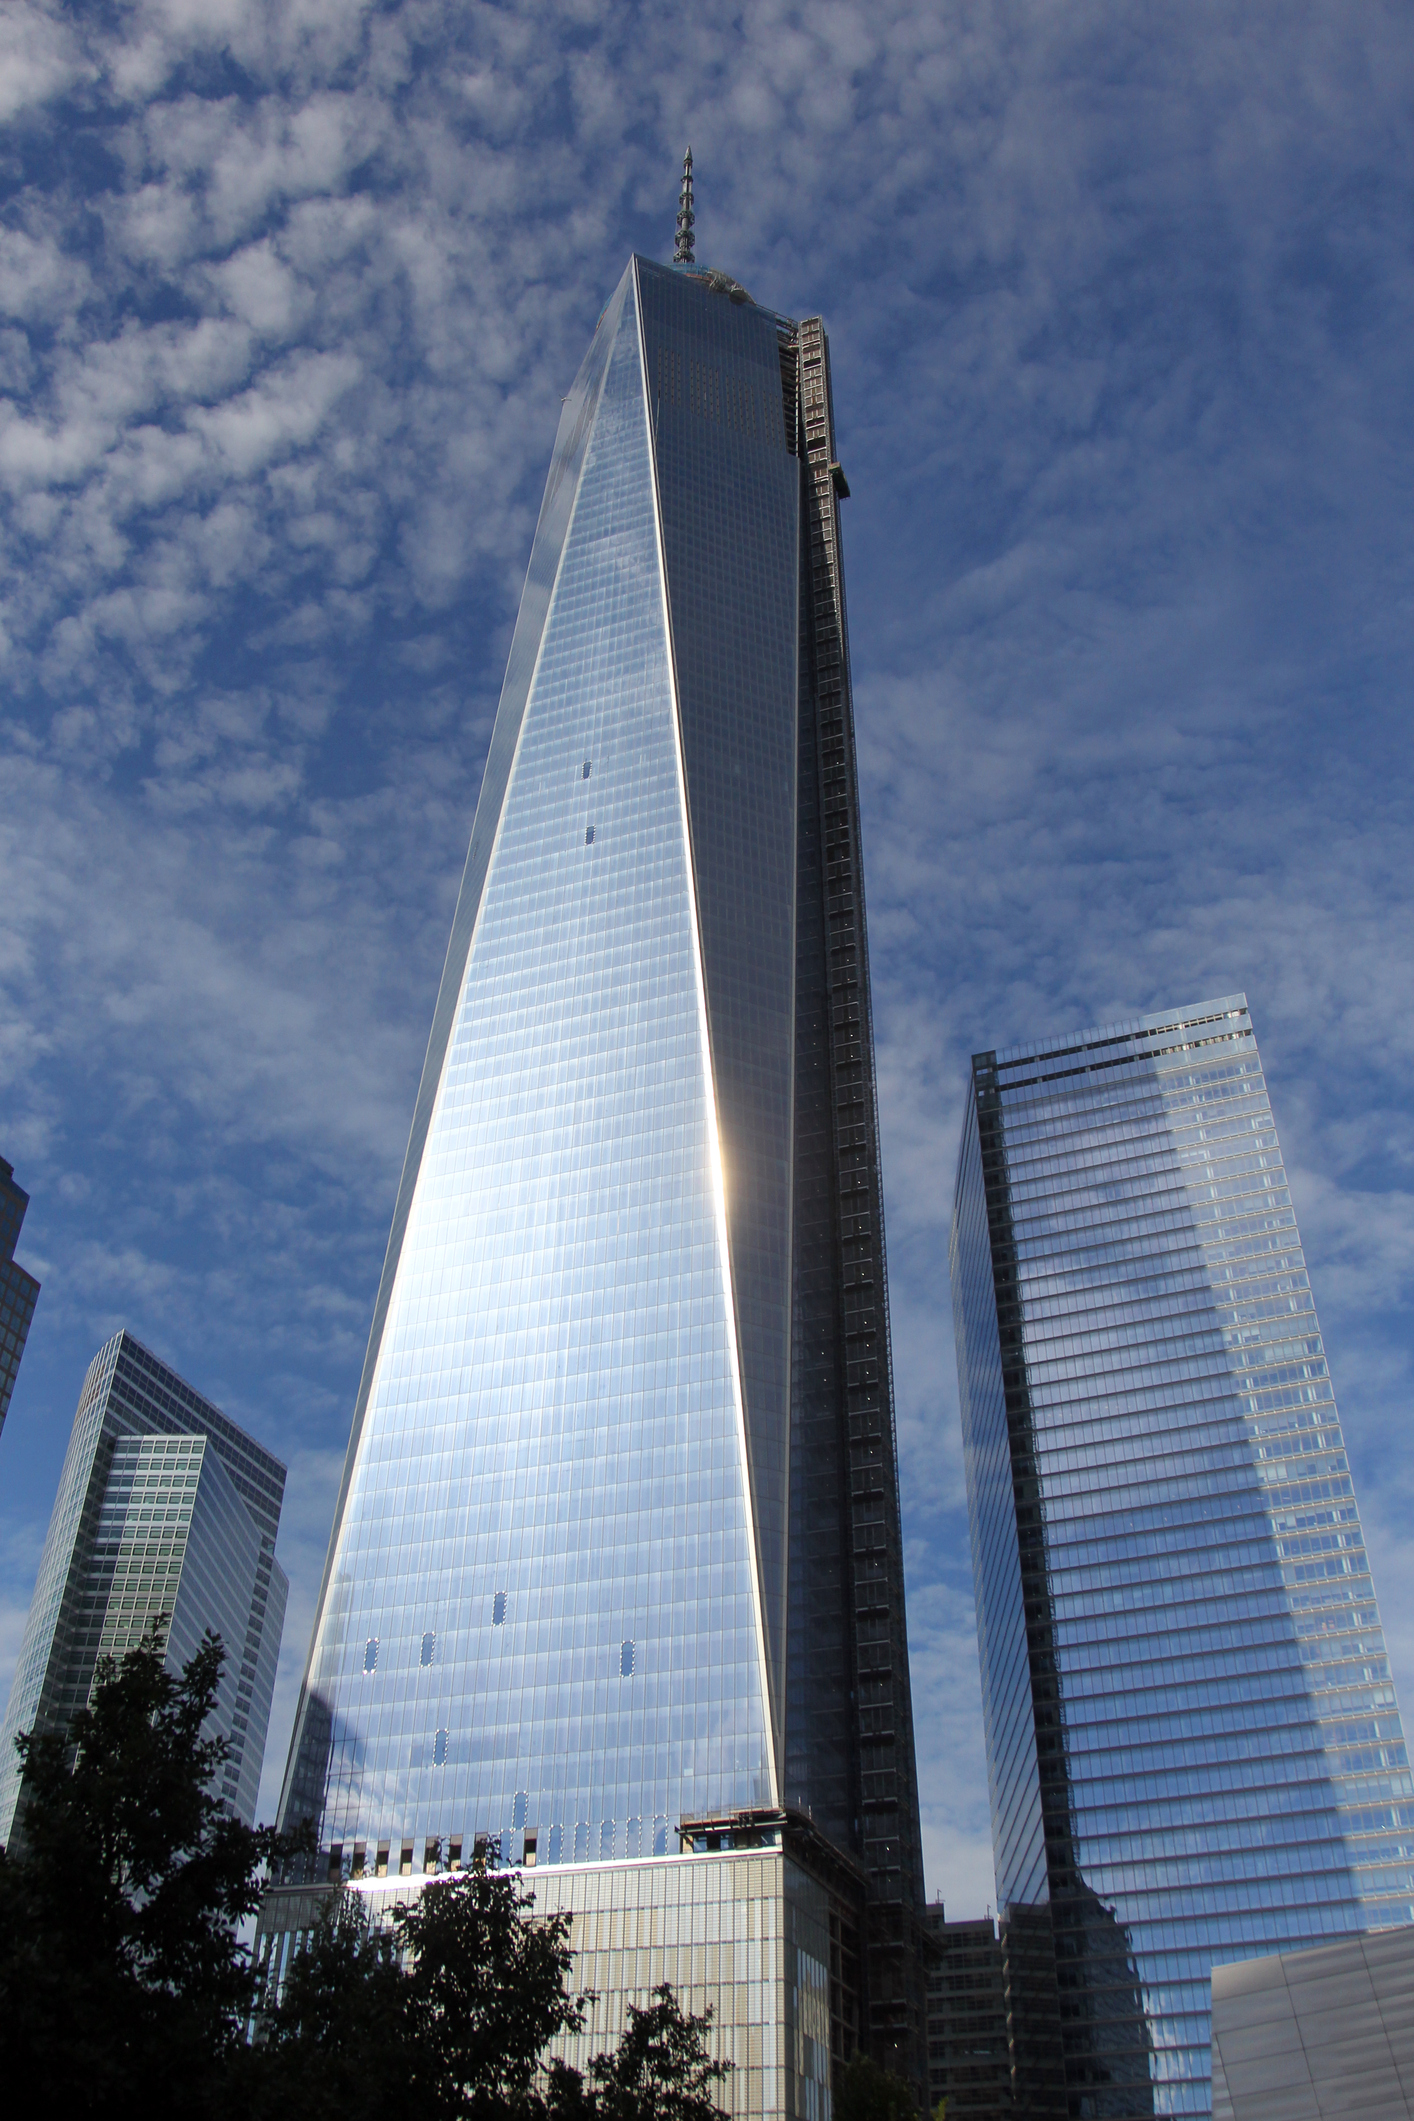 Търговски център One World, Ню Йорк построен 2012 г. Той се издига на височина 1,776 фута  (541 м). Неговата цена: 3,8 милиарда долара.